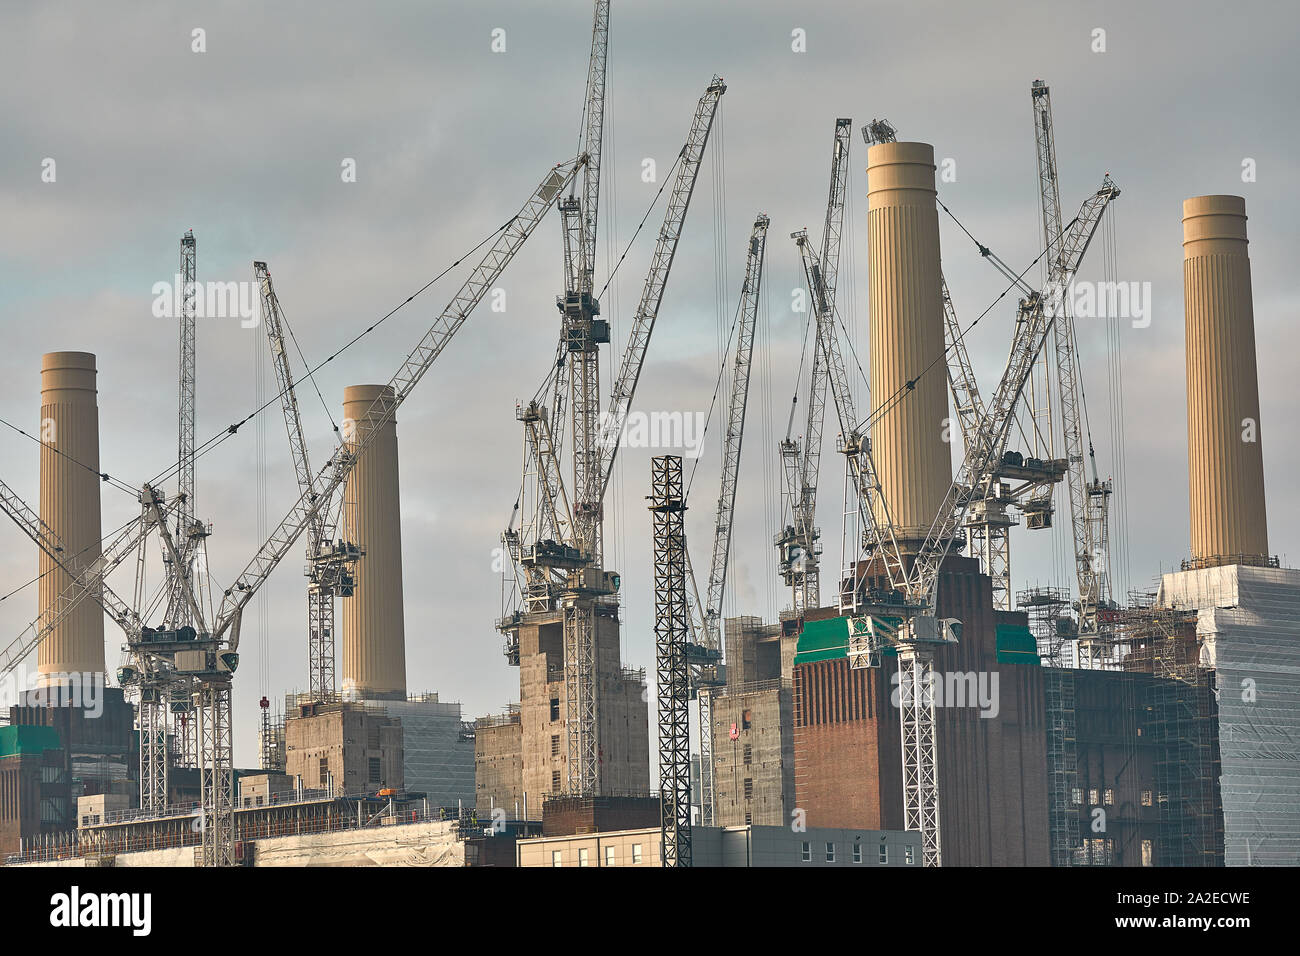 London, England - Jan 21, 2019: Die Bauarbeiten am ehemaligen Battersea Power Station, wie es in eine gemischte Entwicklung umgewandelt wird. Stockfoto